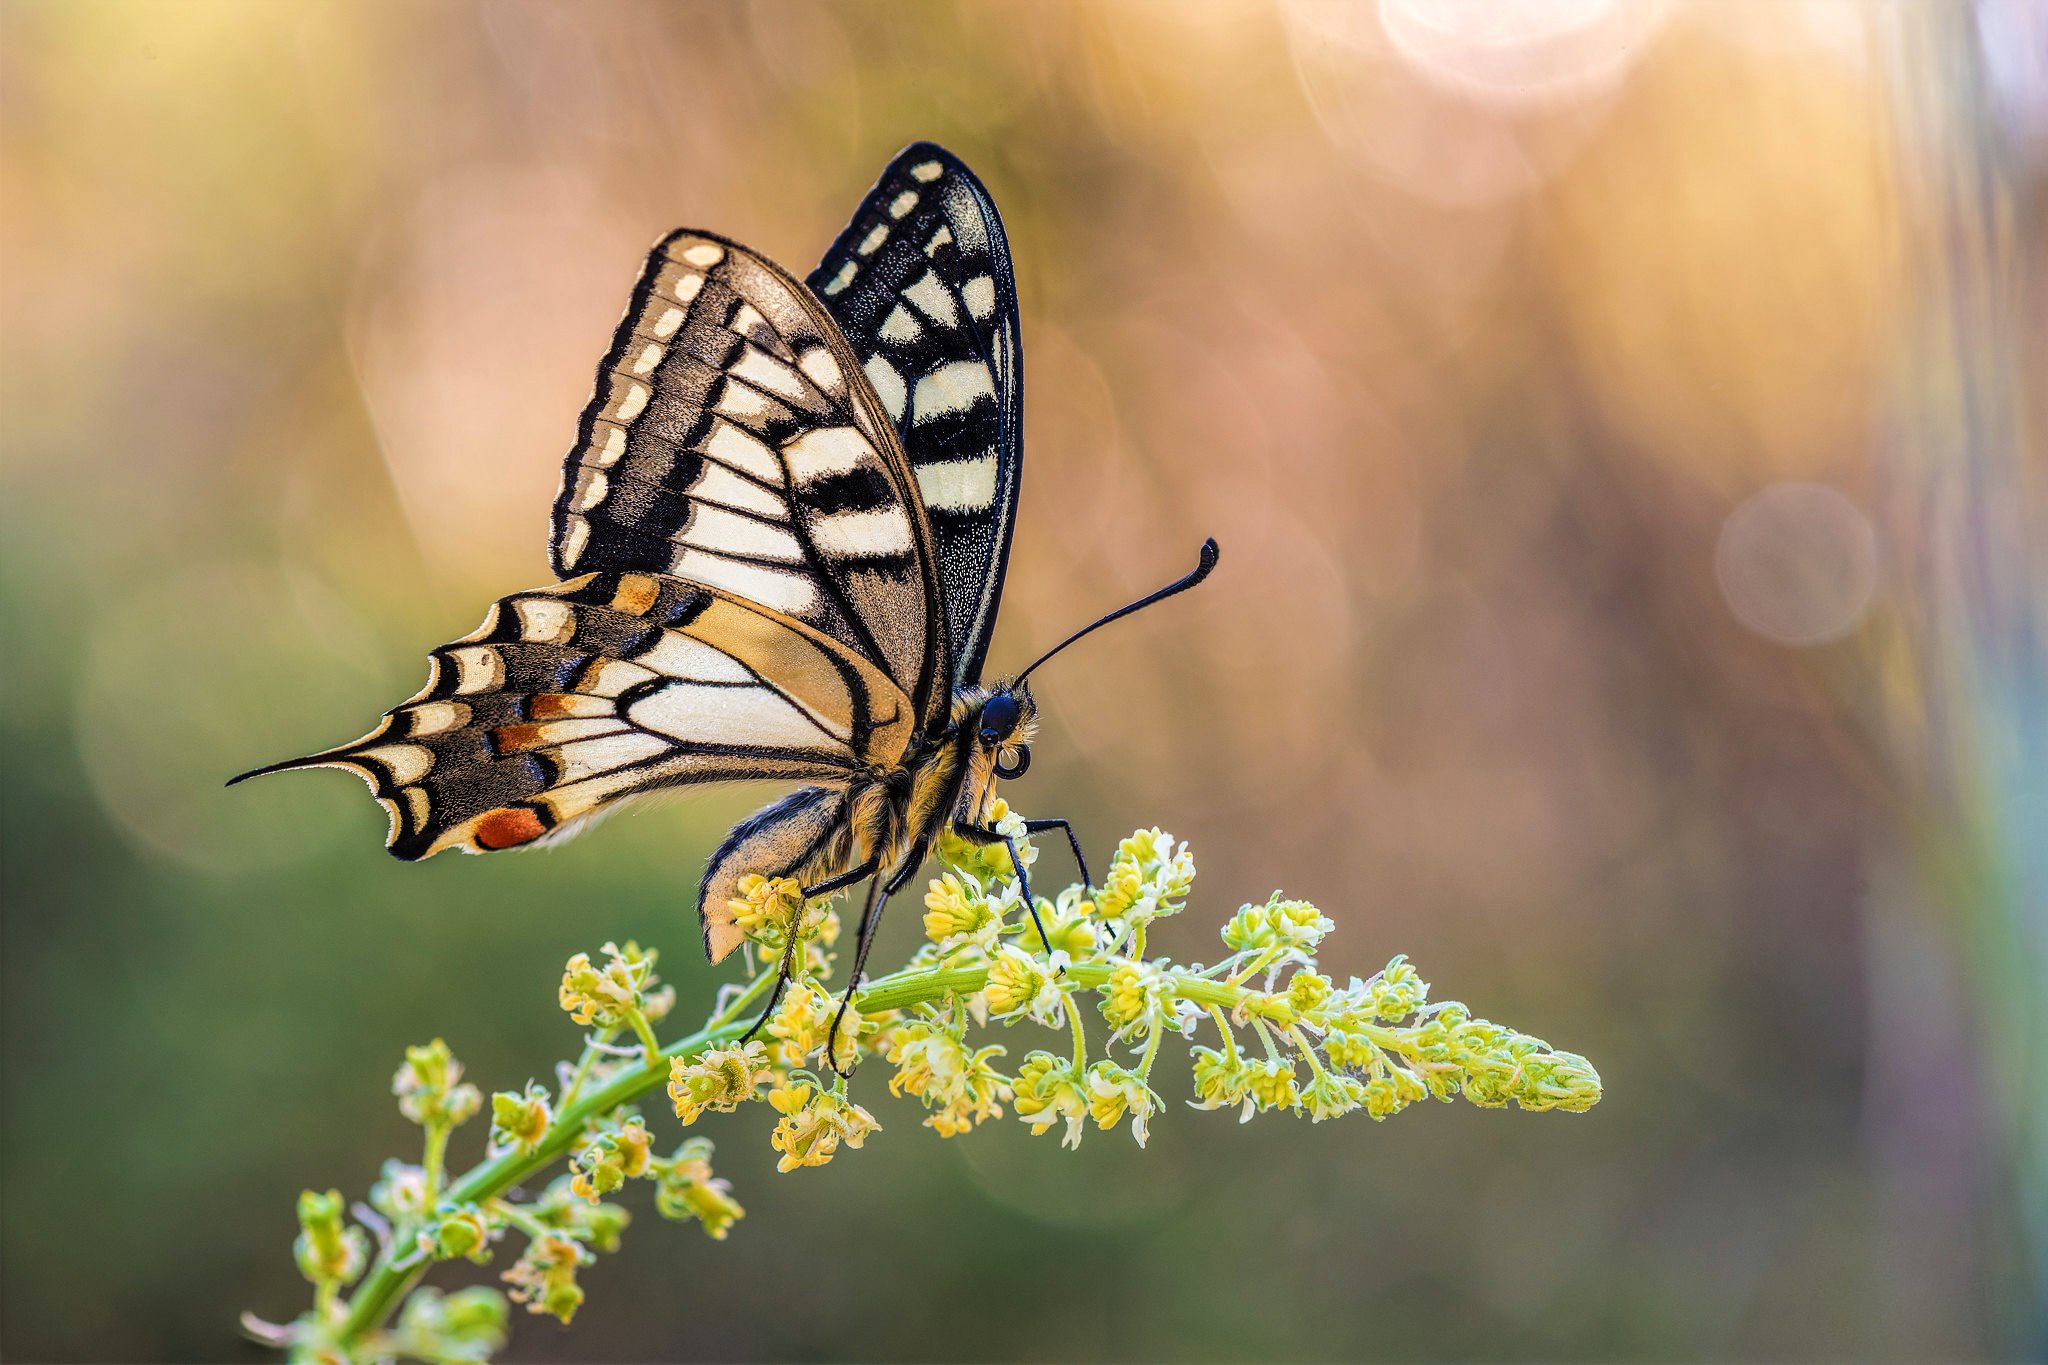 Descarga gratuita de fondo de pantalla para móvil de Animales, Insecto, Mariposa, Macrofotografía.